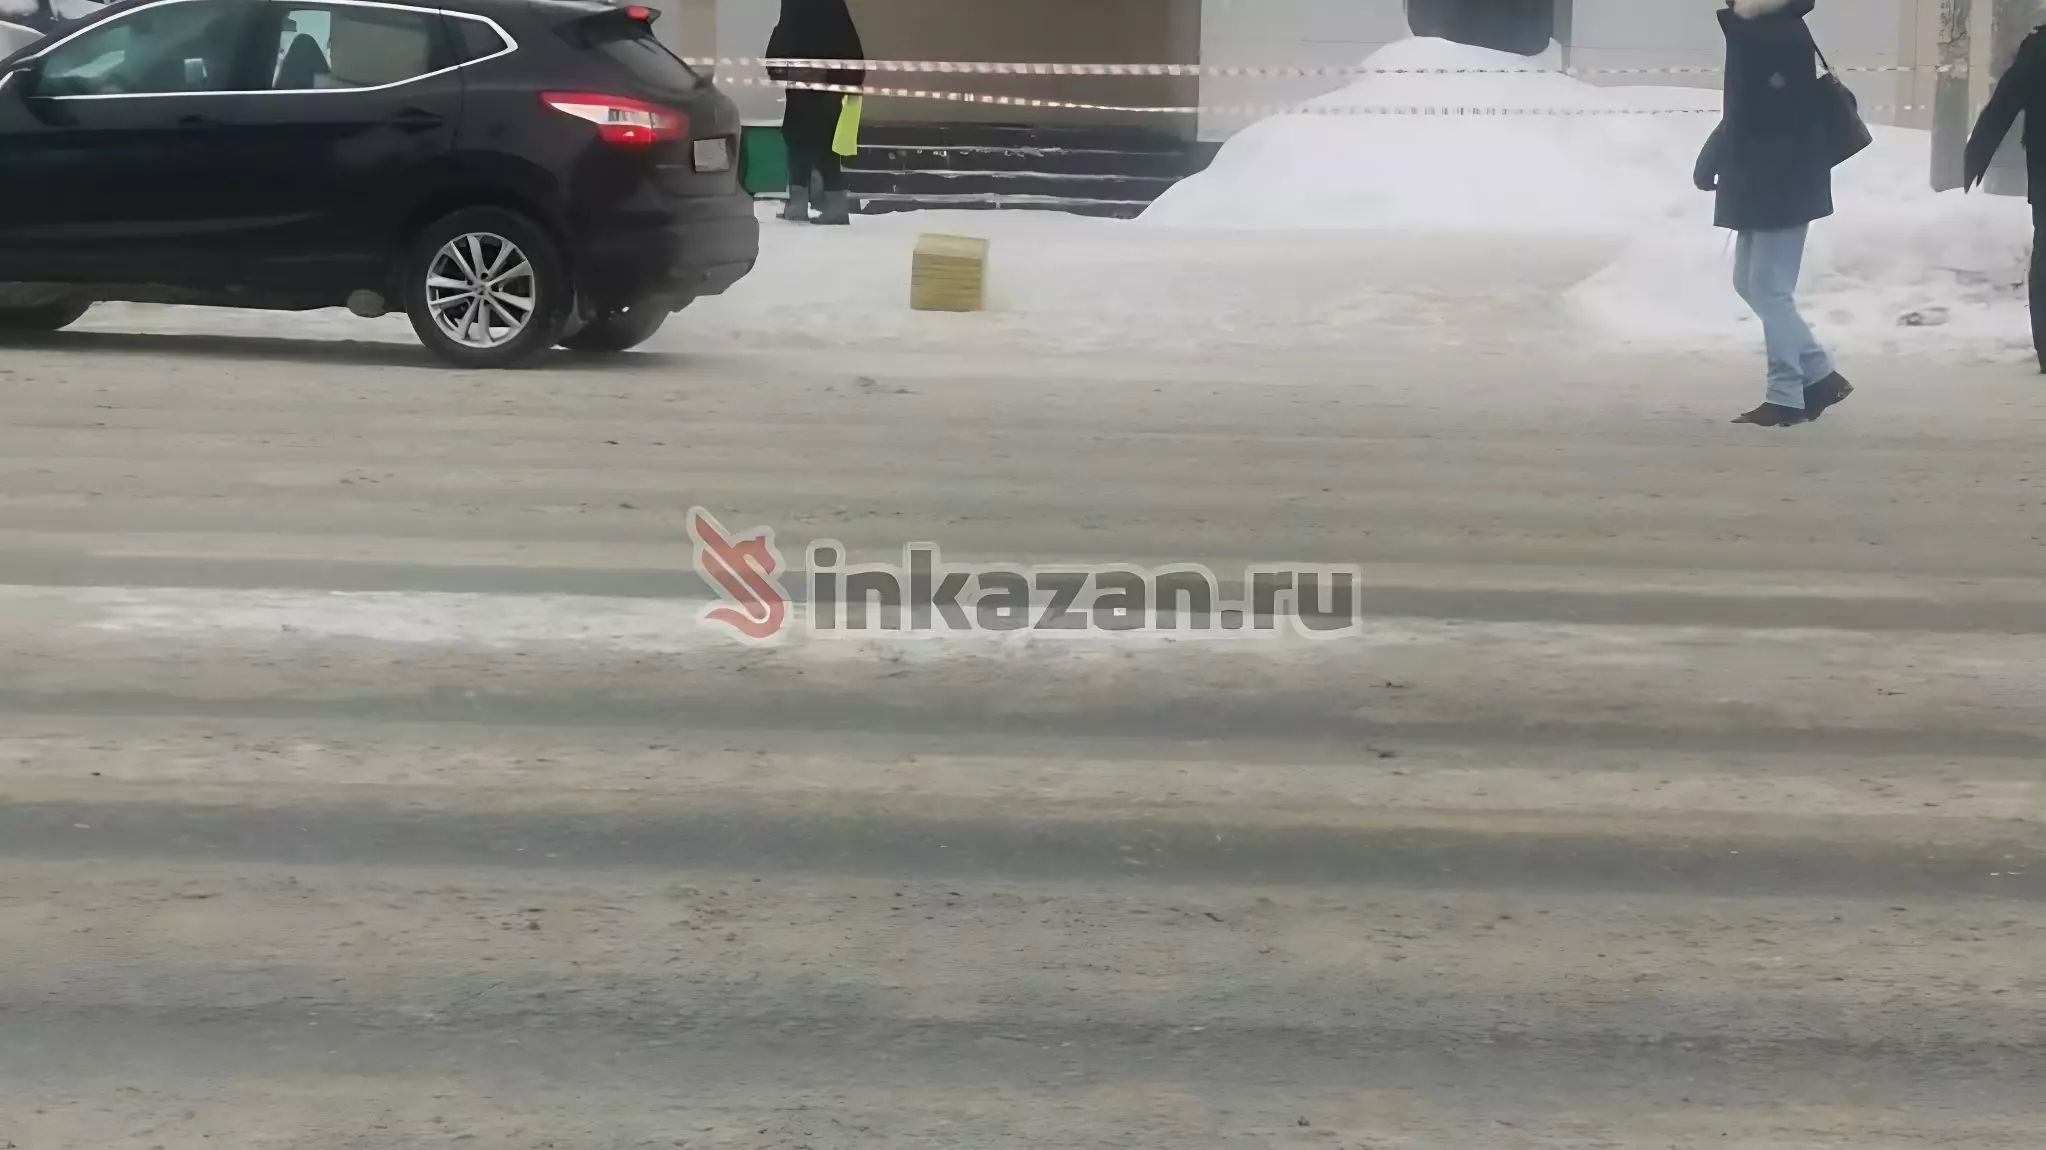 В Казани из-за подозрительного предмета огородили часть улицы